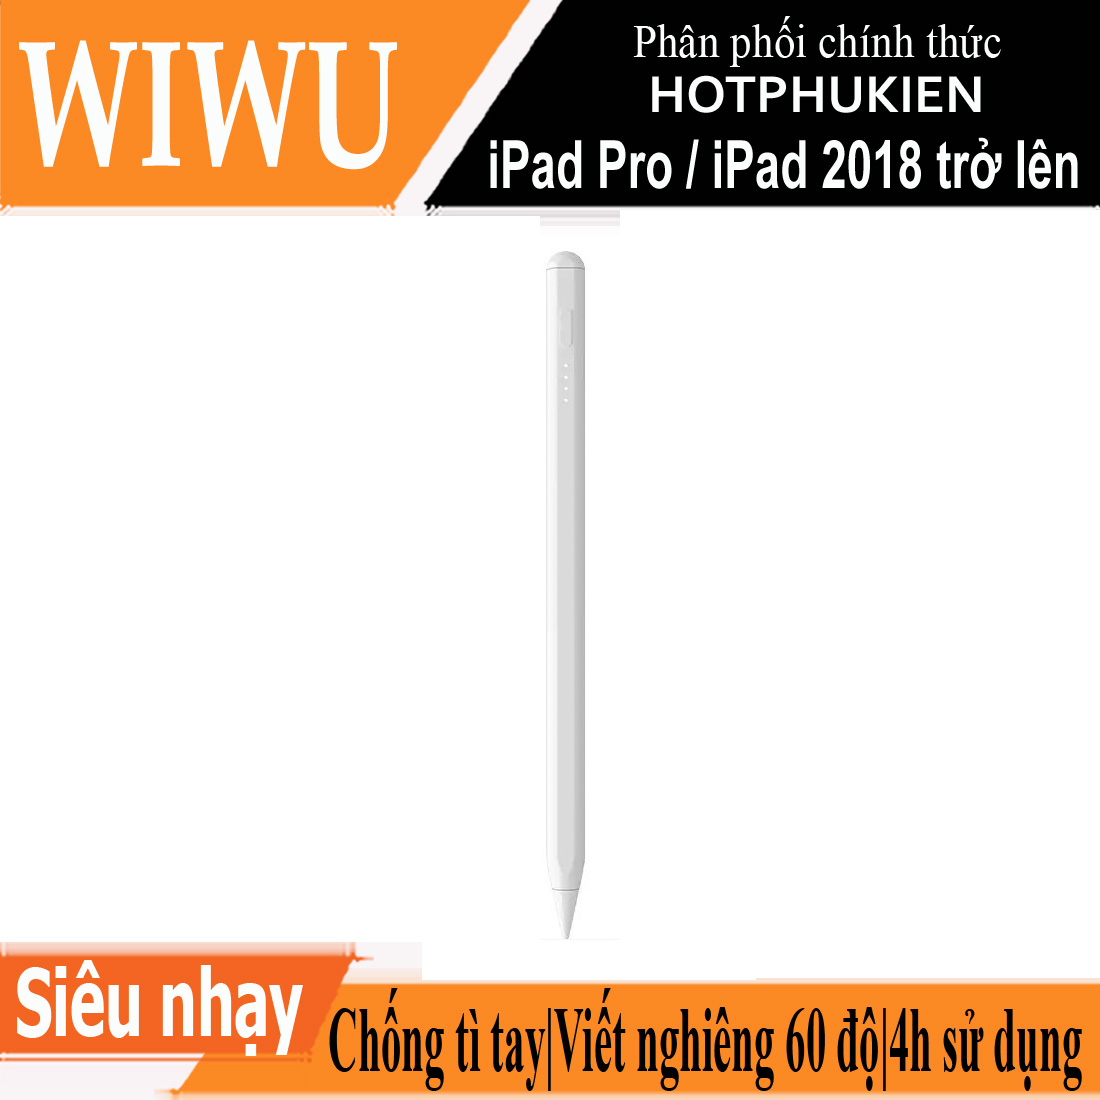 Bút cảm ứng stylus thông minh đầu bút siêu mịn mượt hiệu WIWU Pencil Pro Max cho iPad Pro và các dòng iPad / iPad Mini từ đời 2018 trở lên hỗ trợ viết vẽ nghiêng hơn 60 độ, chống tì tay, trang bị nam châm hít vào iPad - hàng nhập khẩu